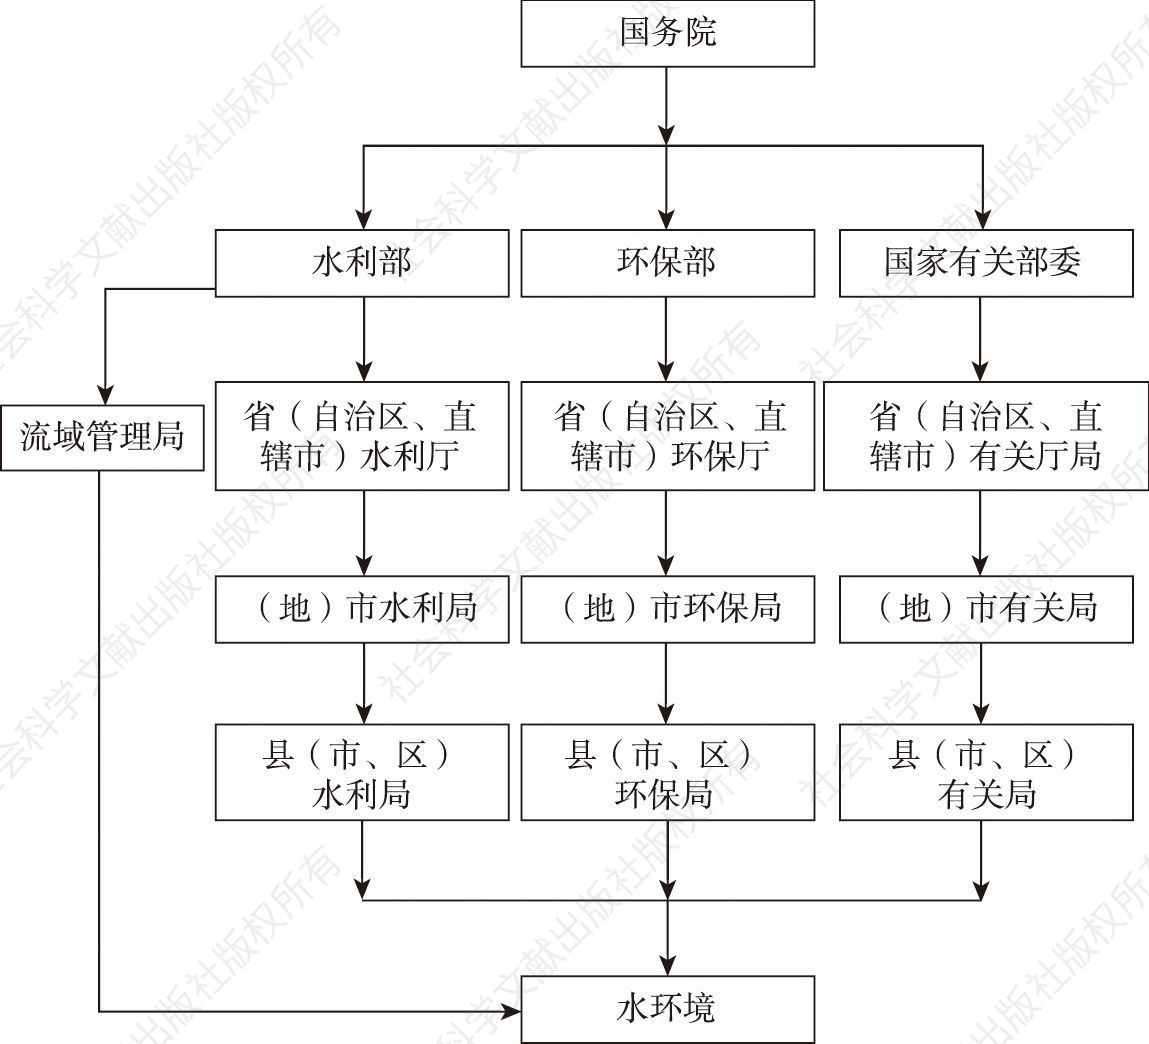 图2-1 中国水环境管理机构